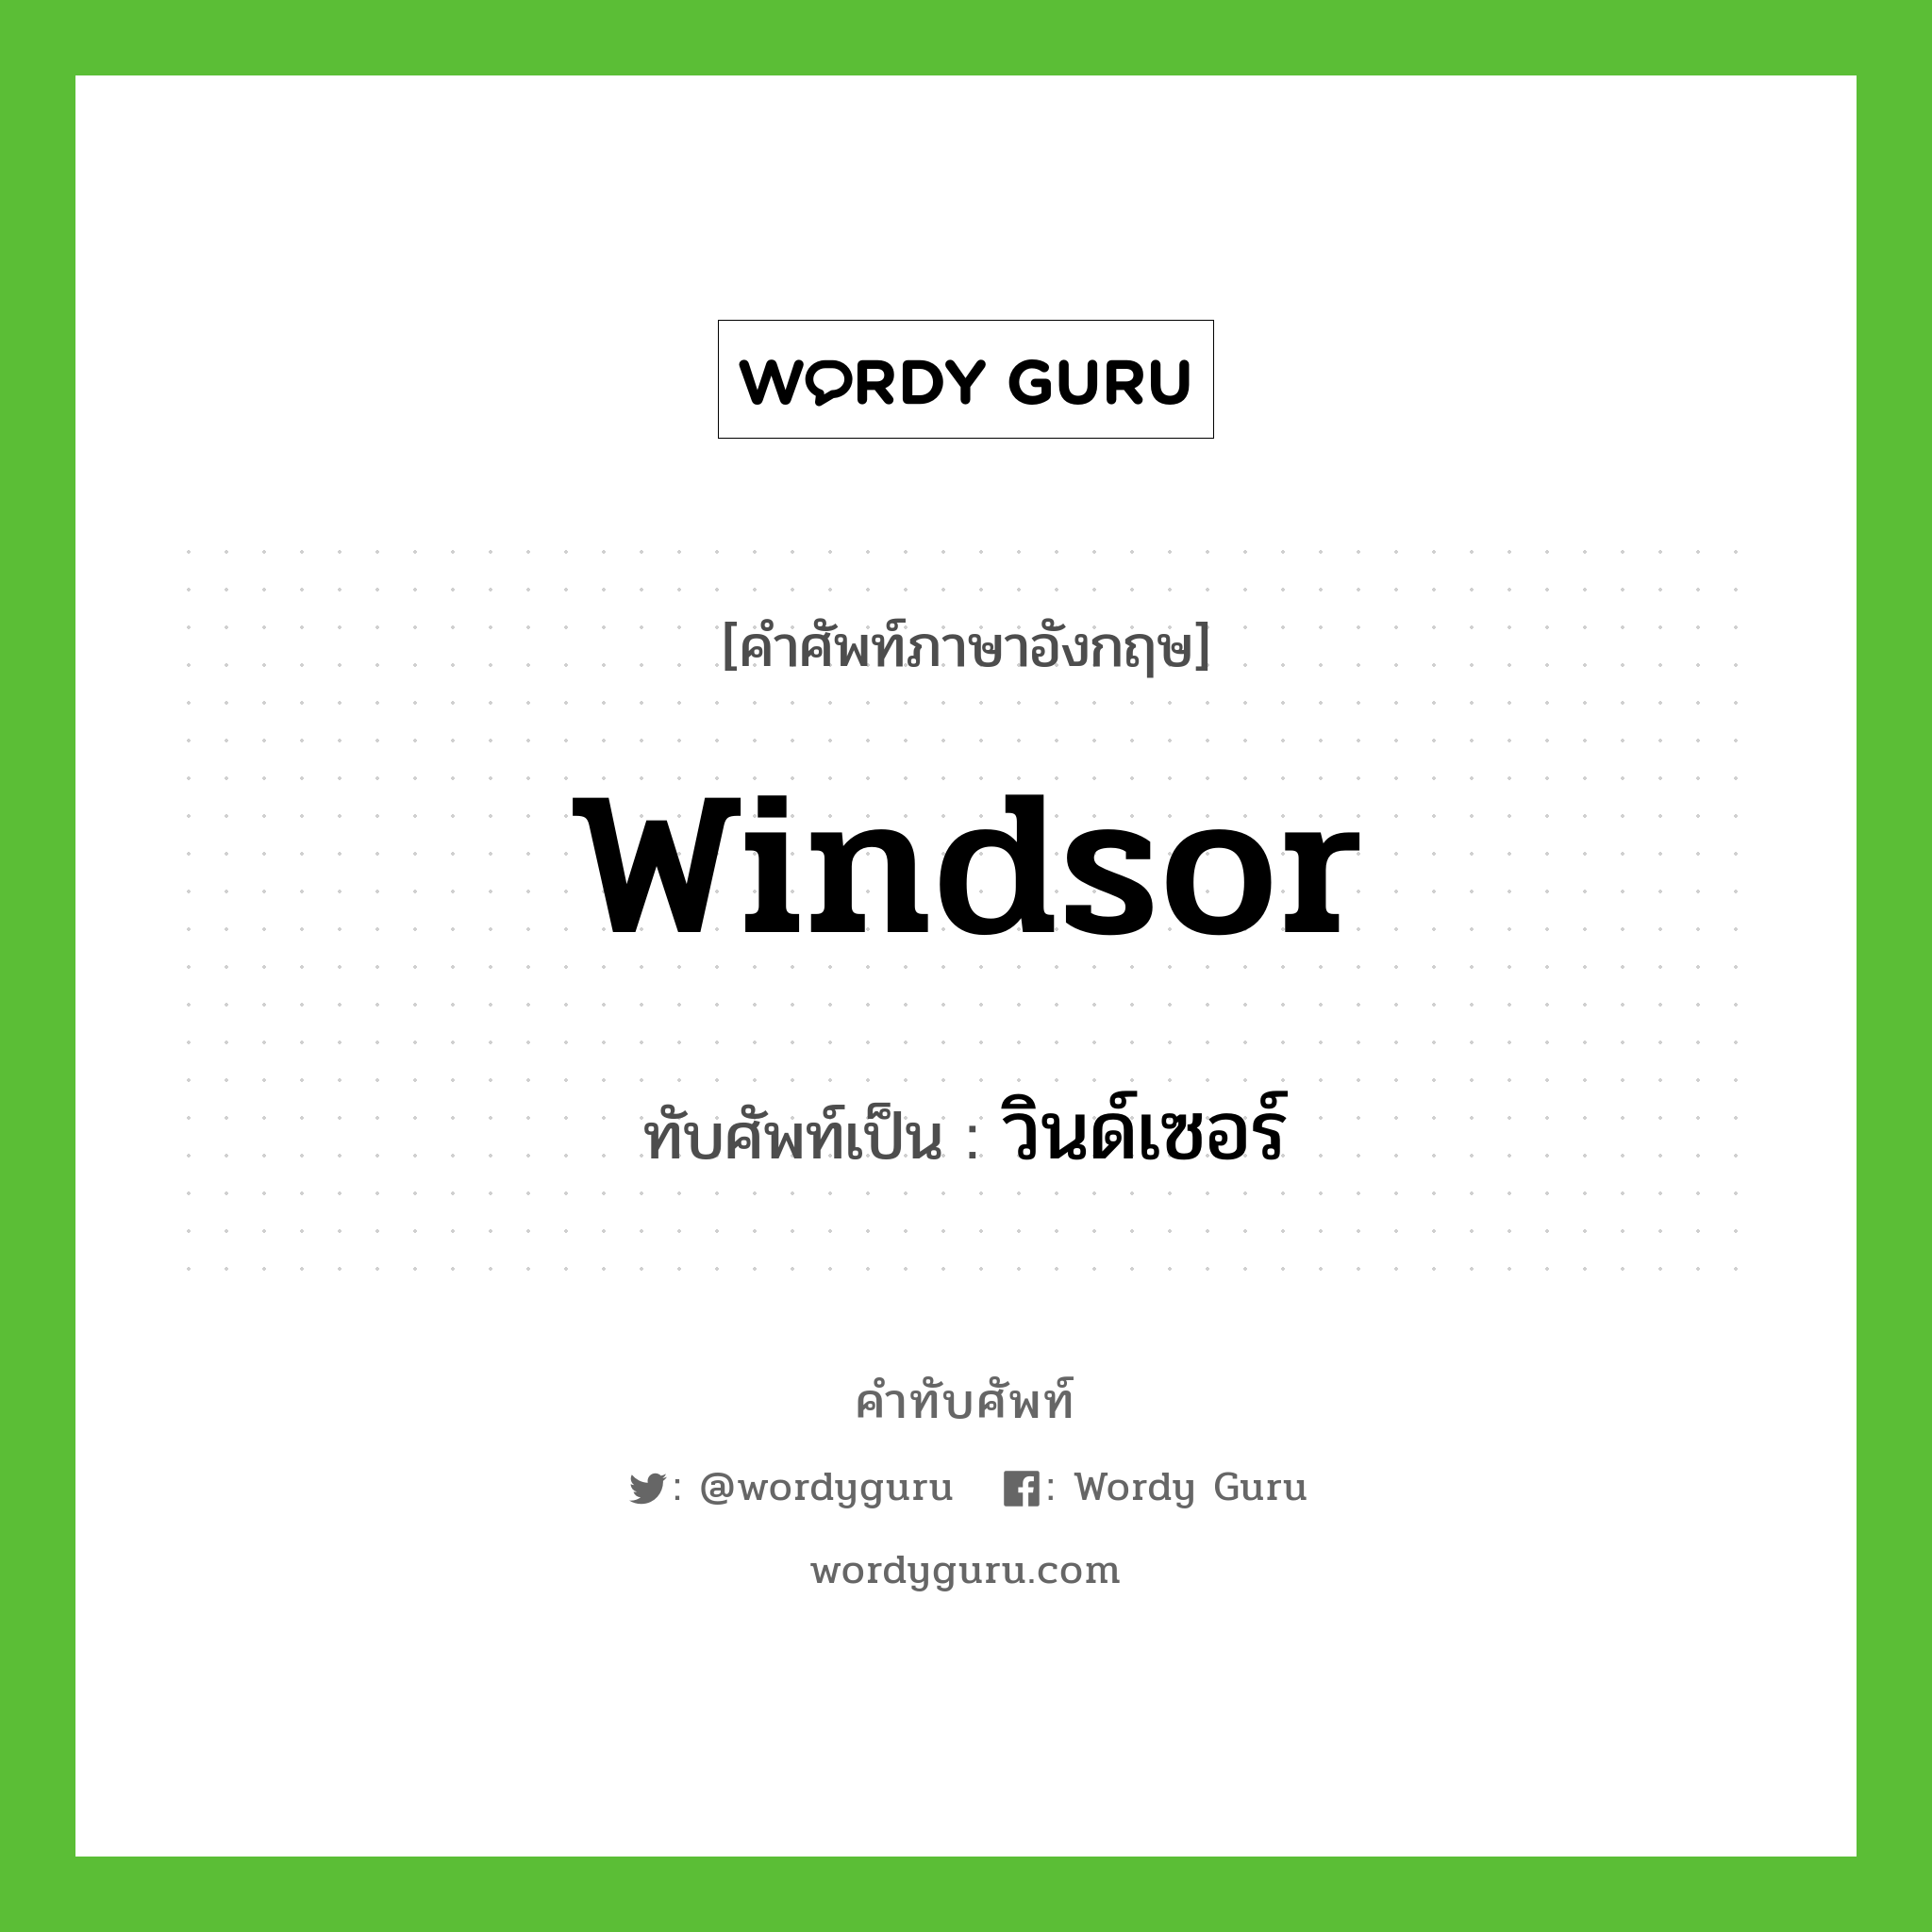 Windsor เขียนเป็นคำไทยว่าอะไร?, คำศัพท์ภาษาอังกฤษ Windsor ทับศัพท์เป็น วินด์เซอร์